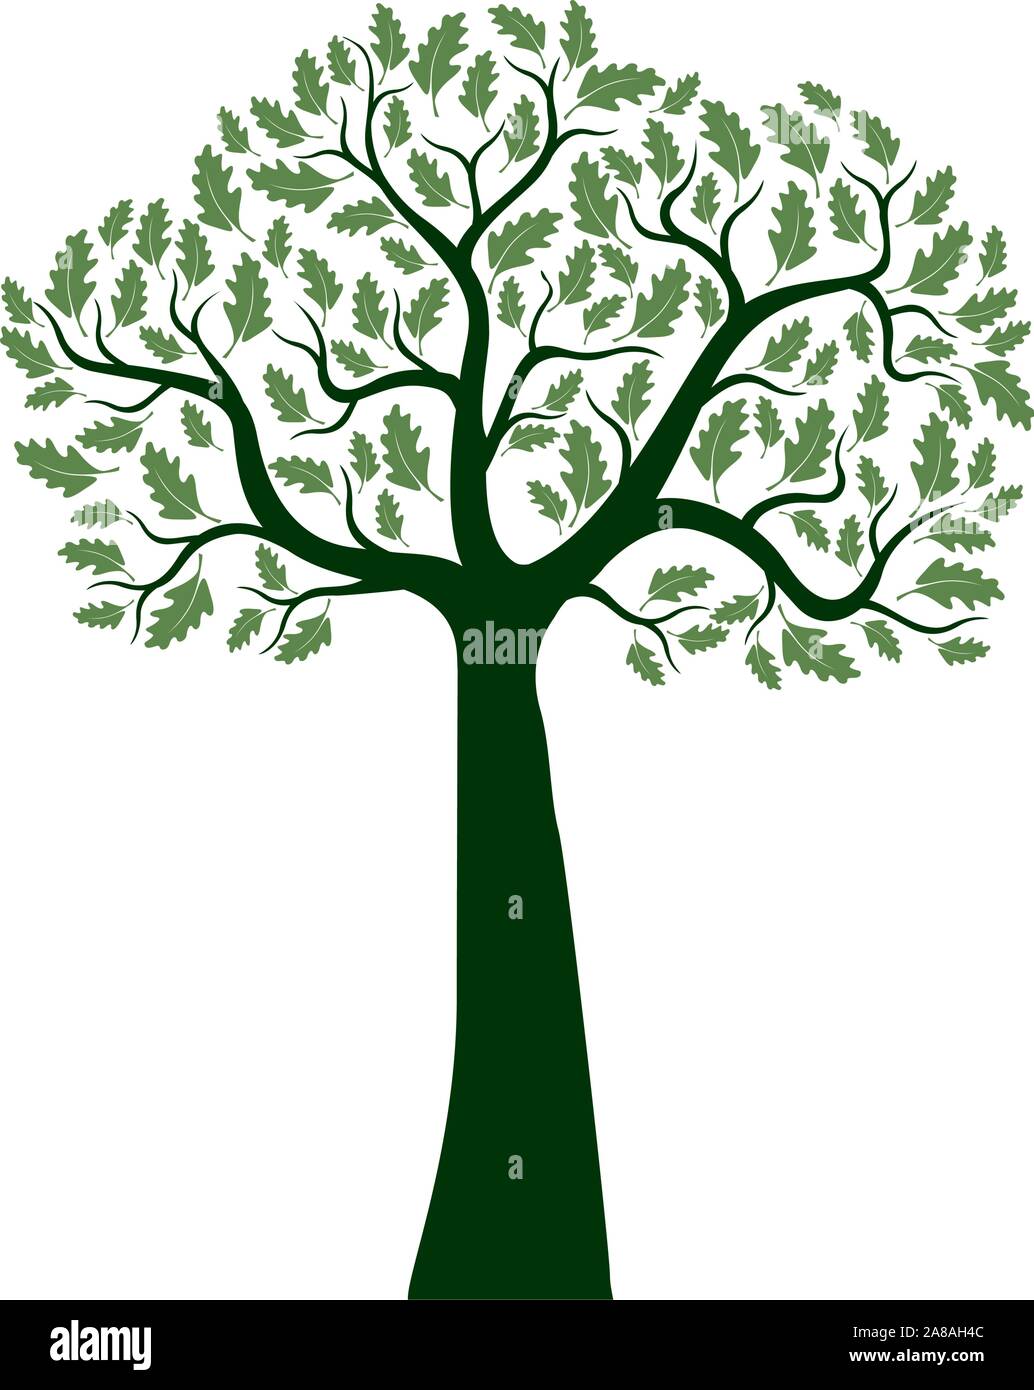 Arbre de chêne vert isolés sur fond blanc. Illustration vectorielle et concept. Plante dans le jardin. Illustration de Vecteur